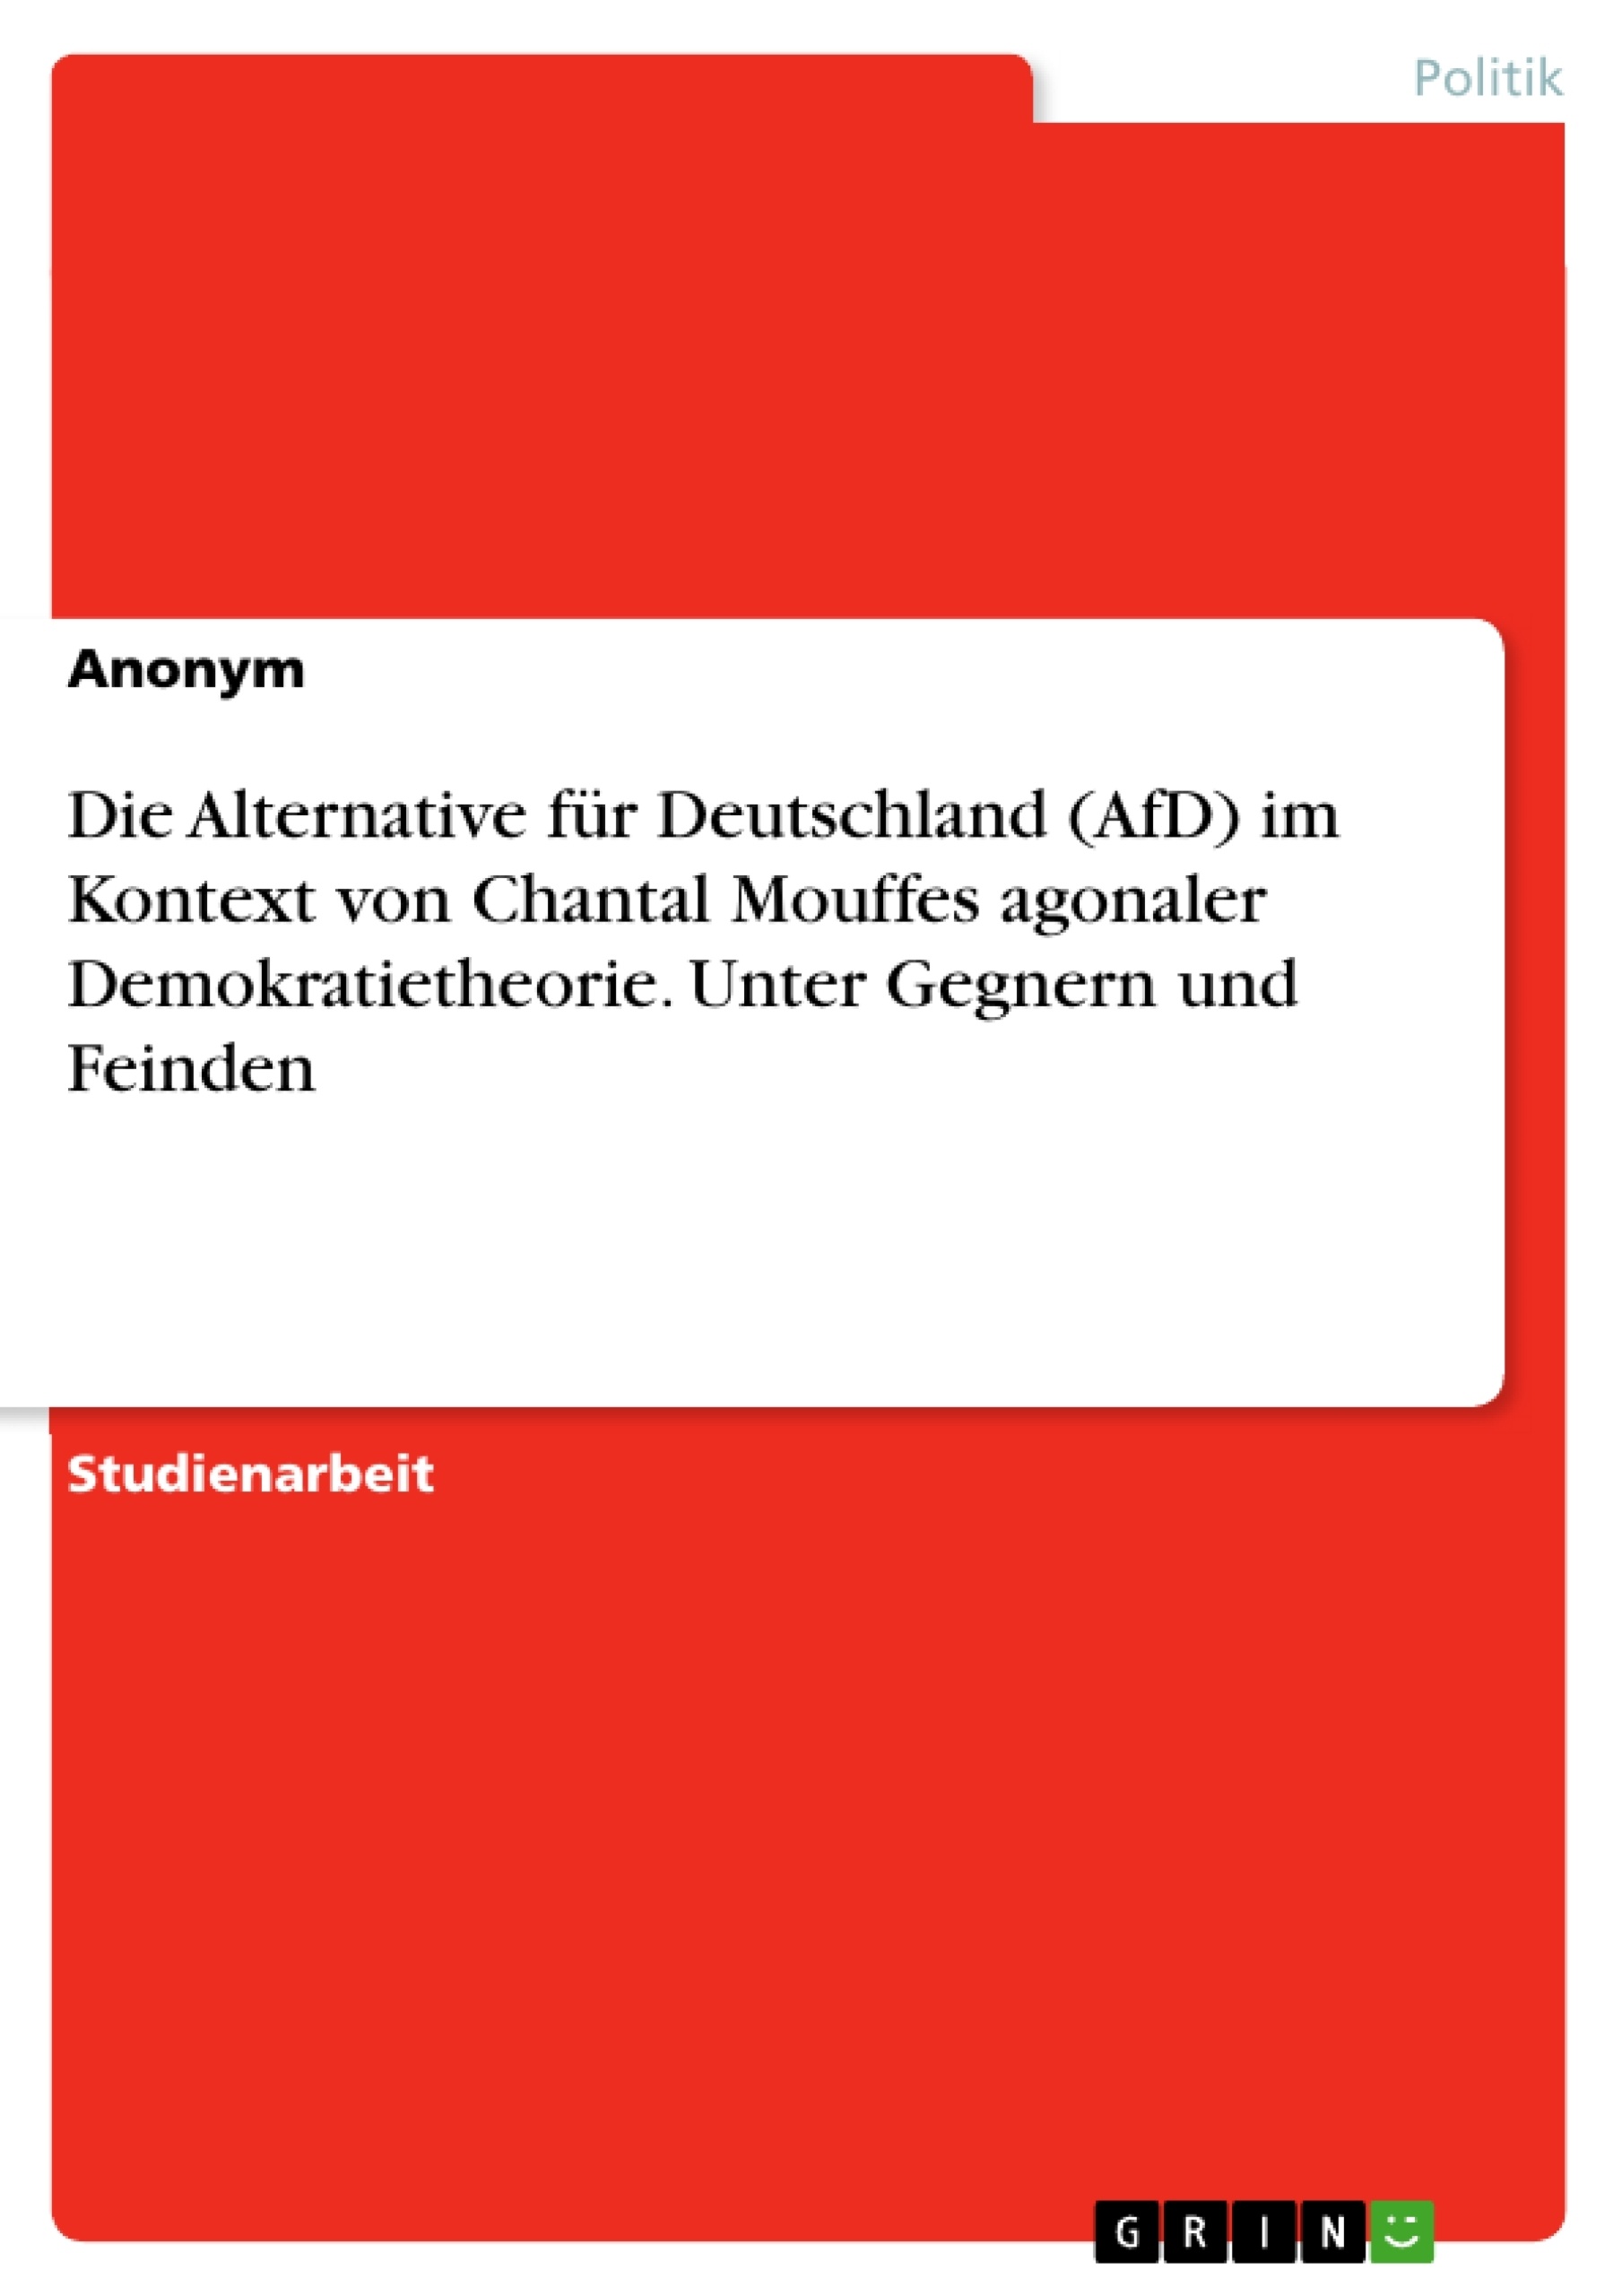 Title: Die Alternative für Deutschland (AfD) im Kontext von Chantal Mouffes agonaler Demokratietheorie. Unter Gegnern und Feinden